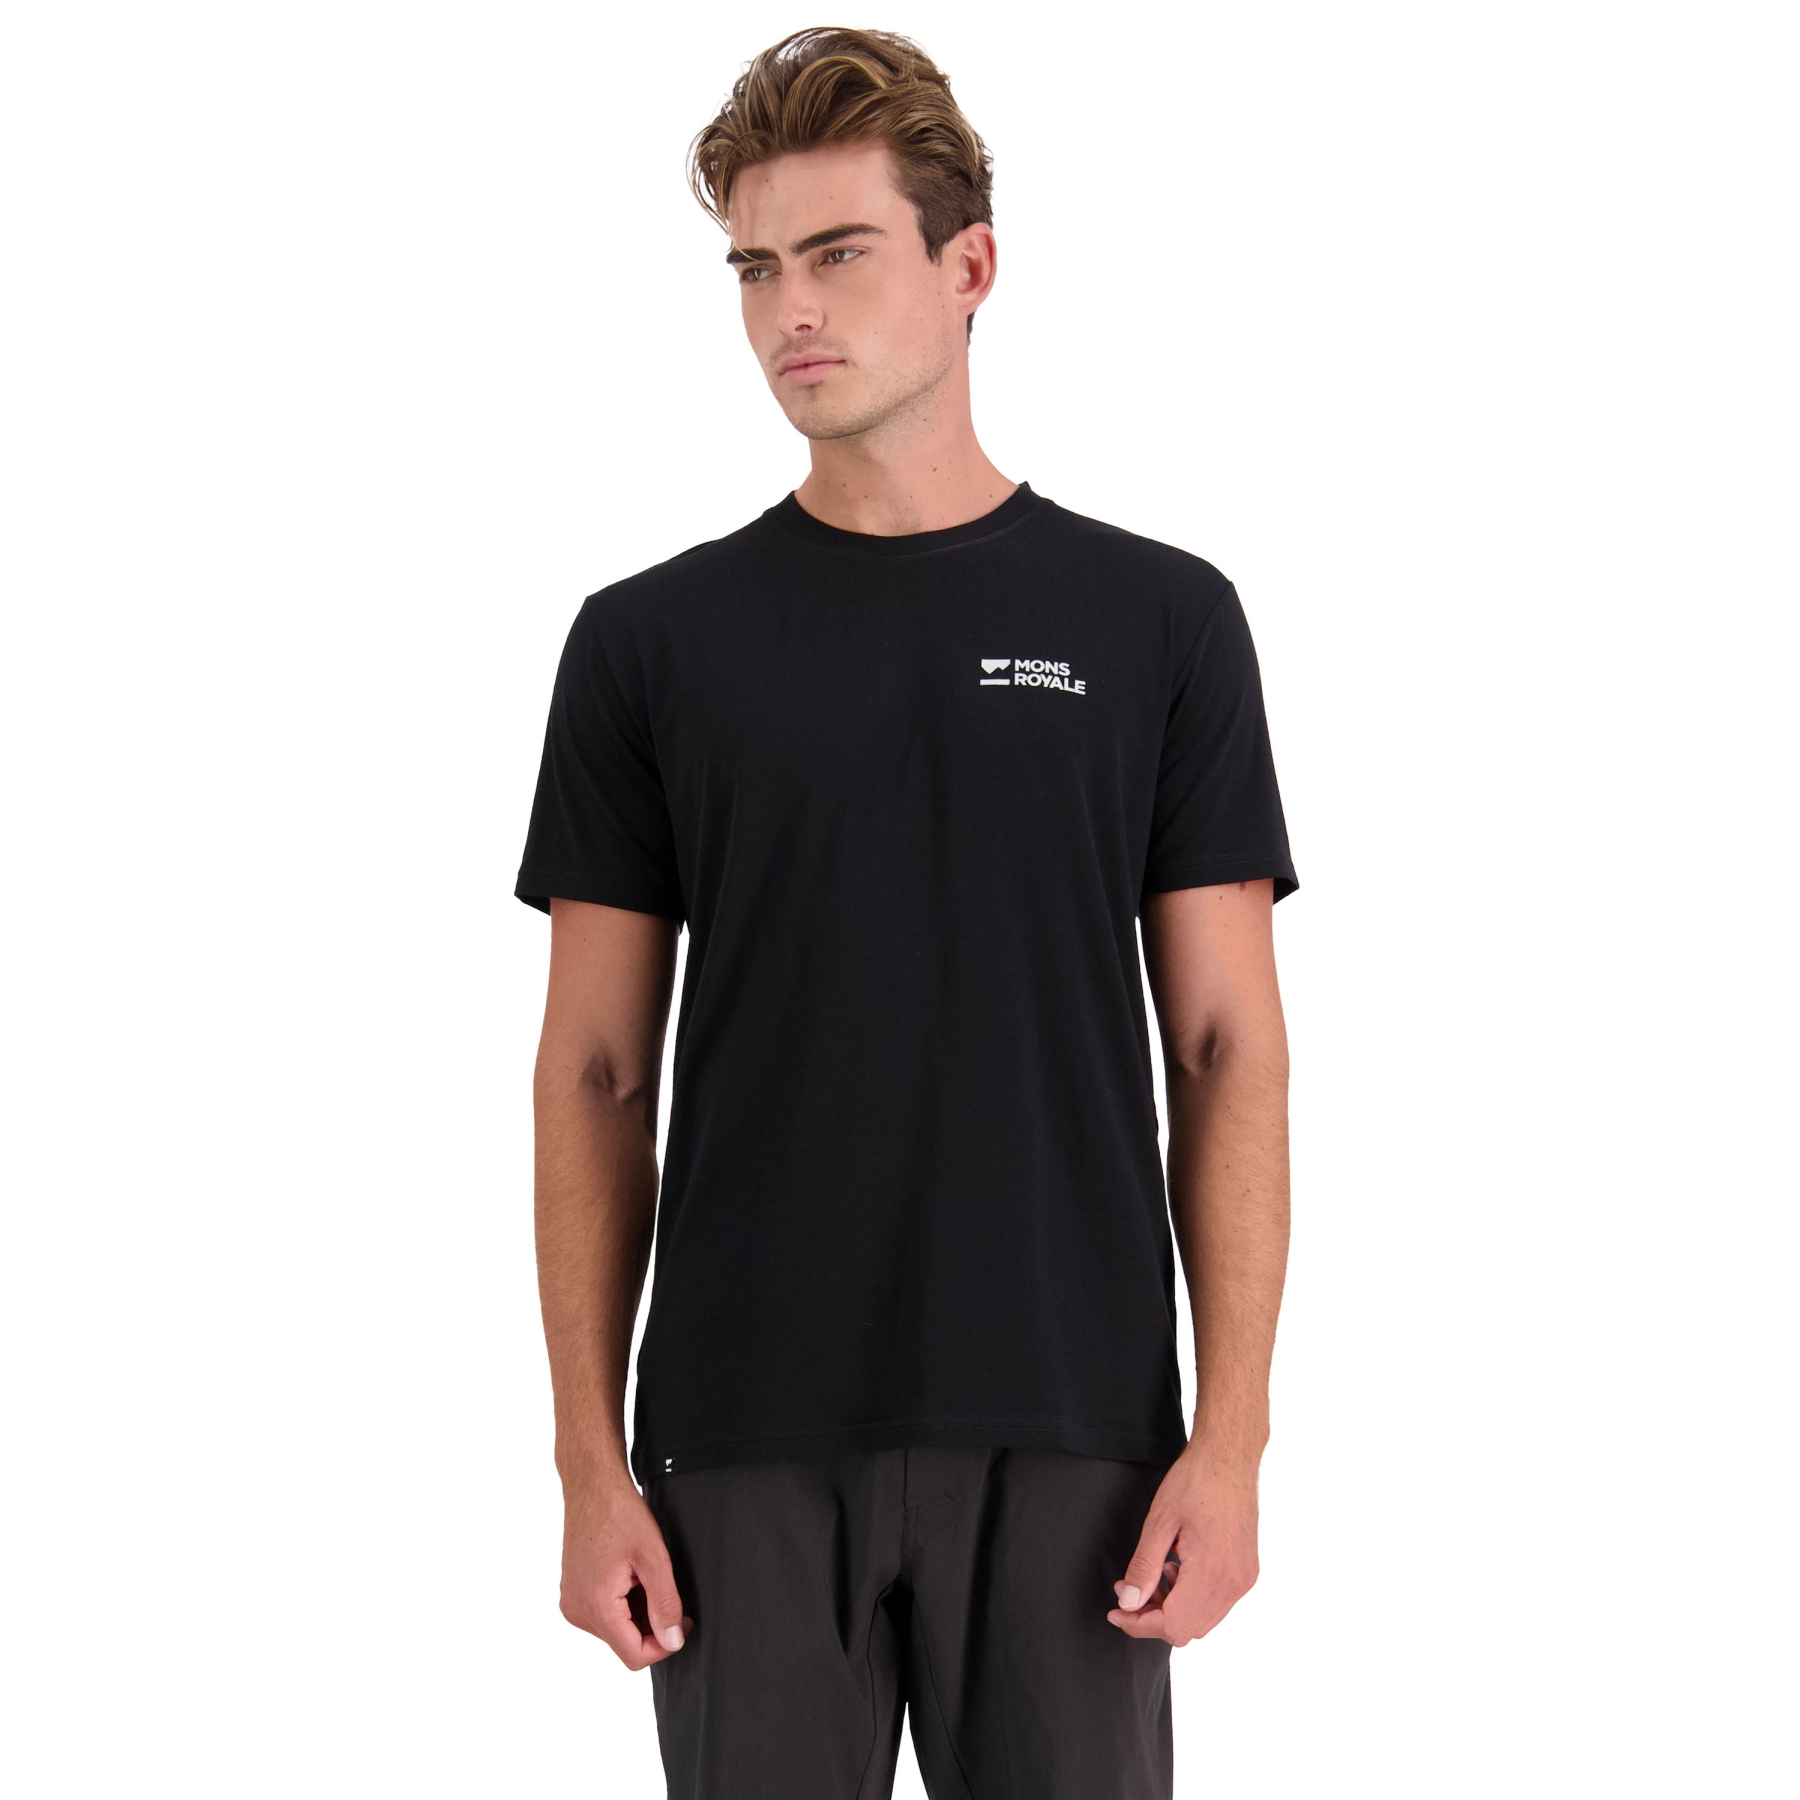 Produktbild von Mons Royale Icon Merino Air-Con T-Shirt Herren - schwarz